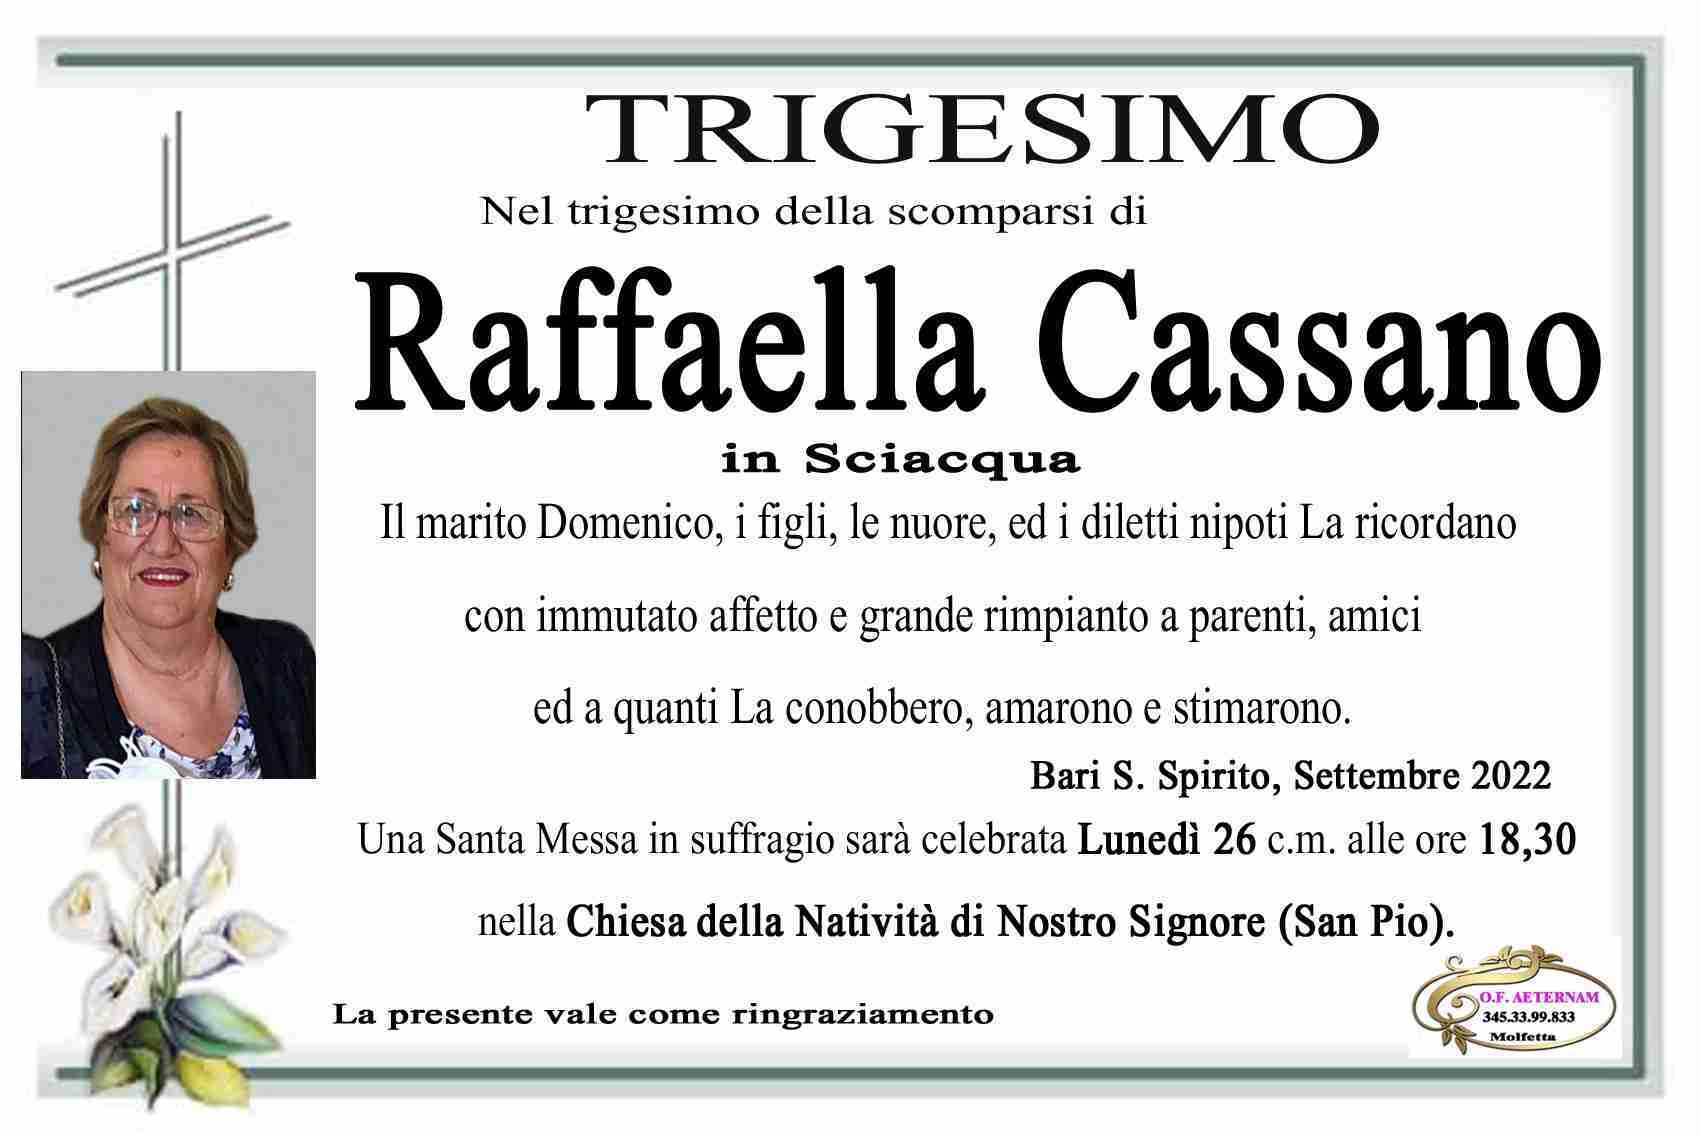 Raffaella Cassano